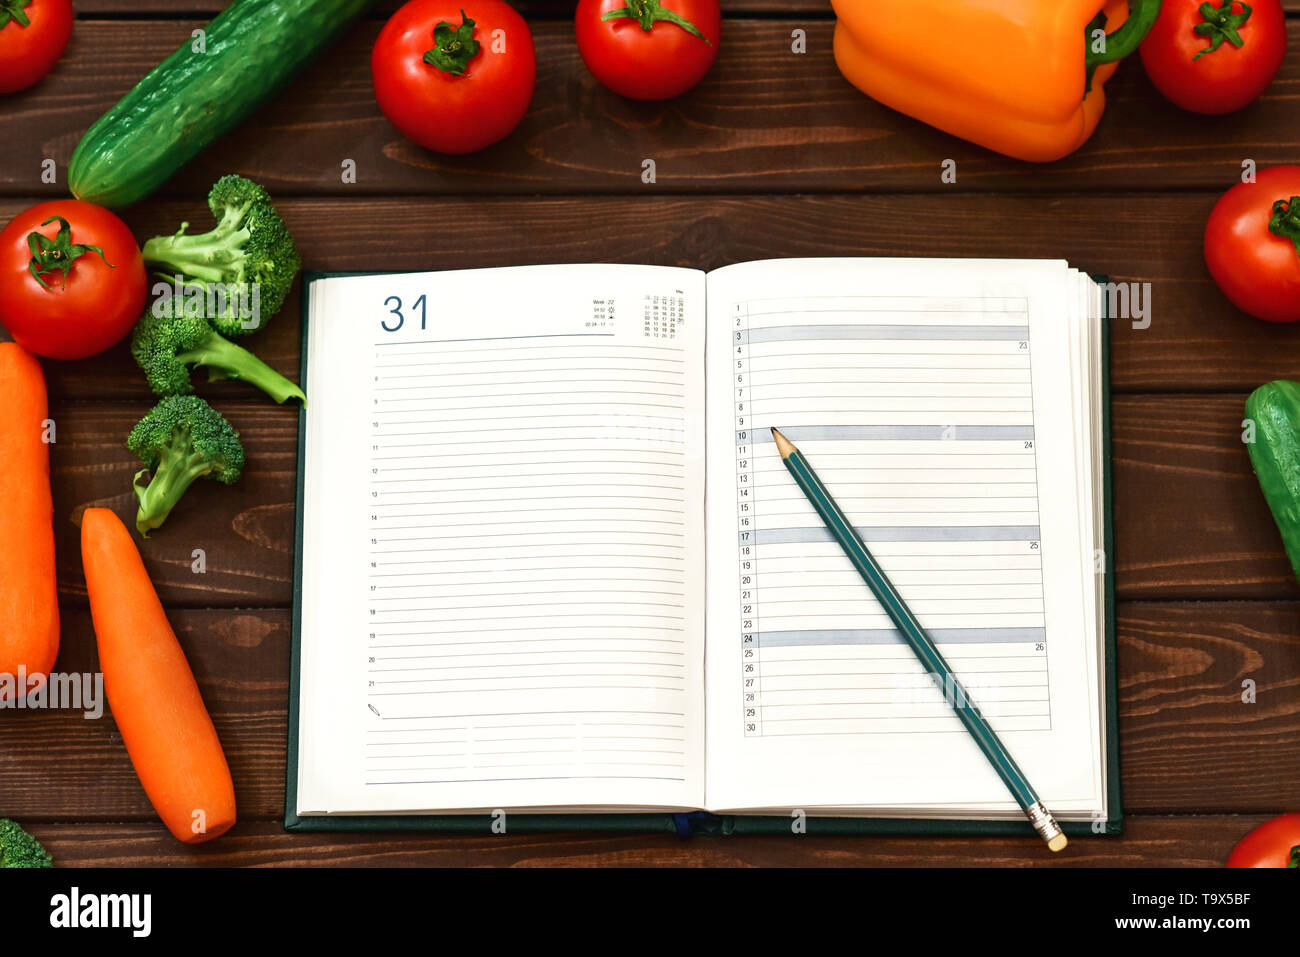 Schéma de l'alimentation, des légumes et de l'image menu de régime plan sur le bloc-notes. Le mec est l'enregistrement d'un programme diététique Recettes de cuisine nouvelle. Banque D'Images